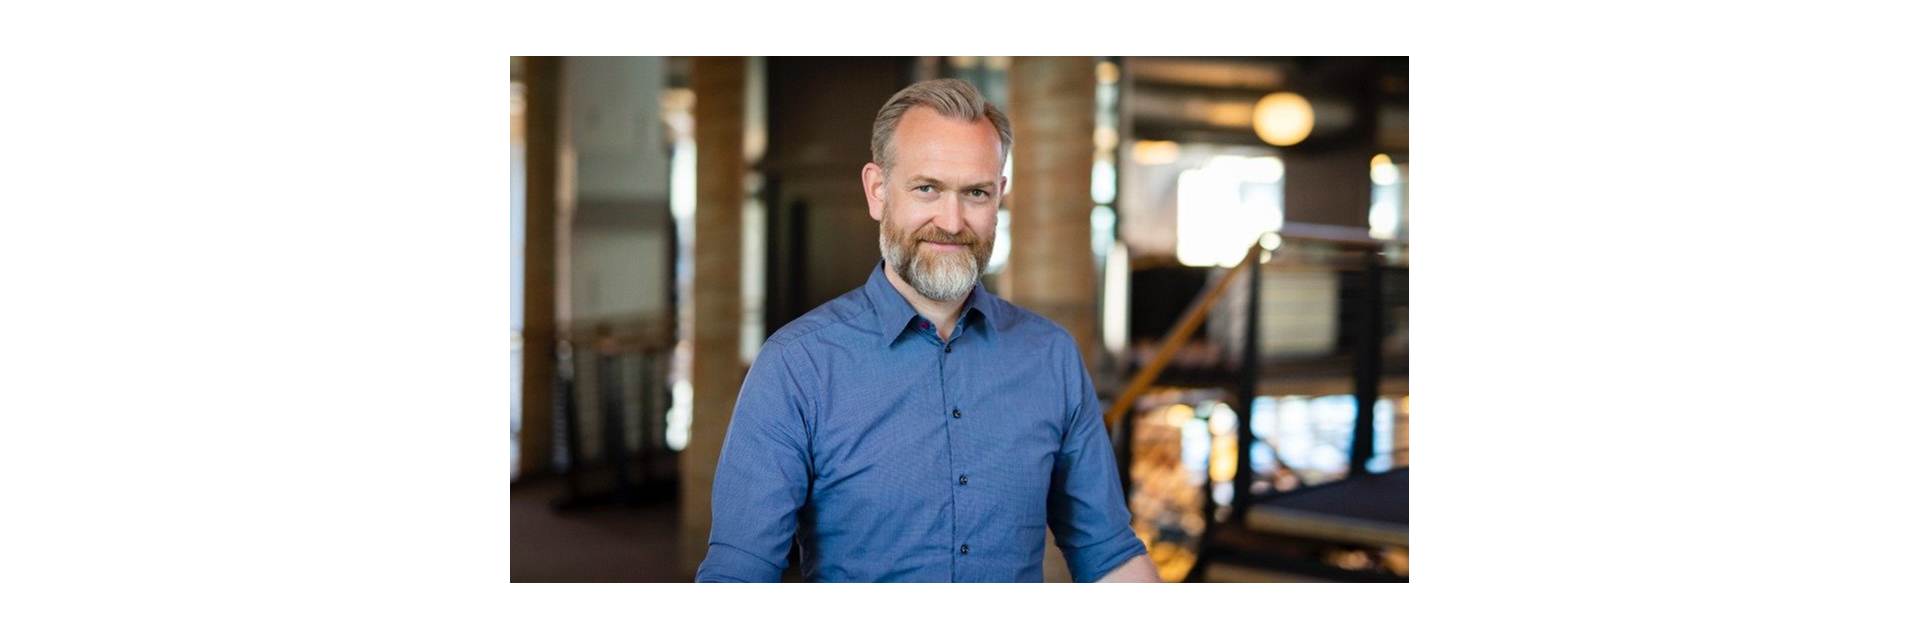 Tor Christian Møglebust, partner and architect in DARK Arkitekter, Oslo